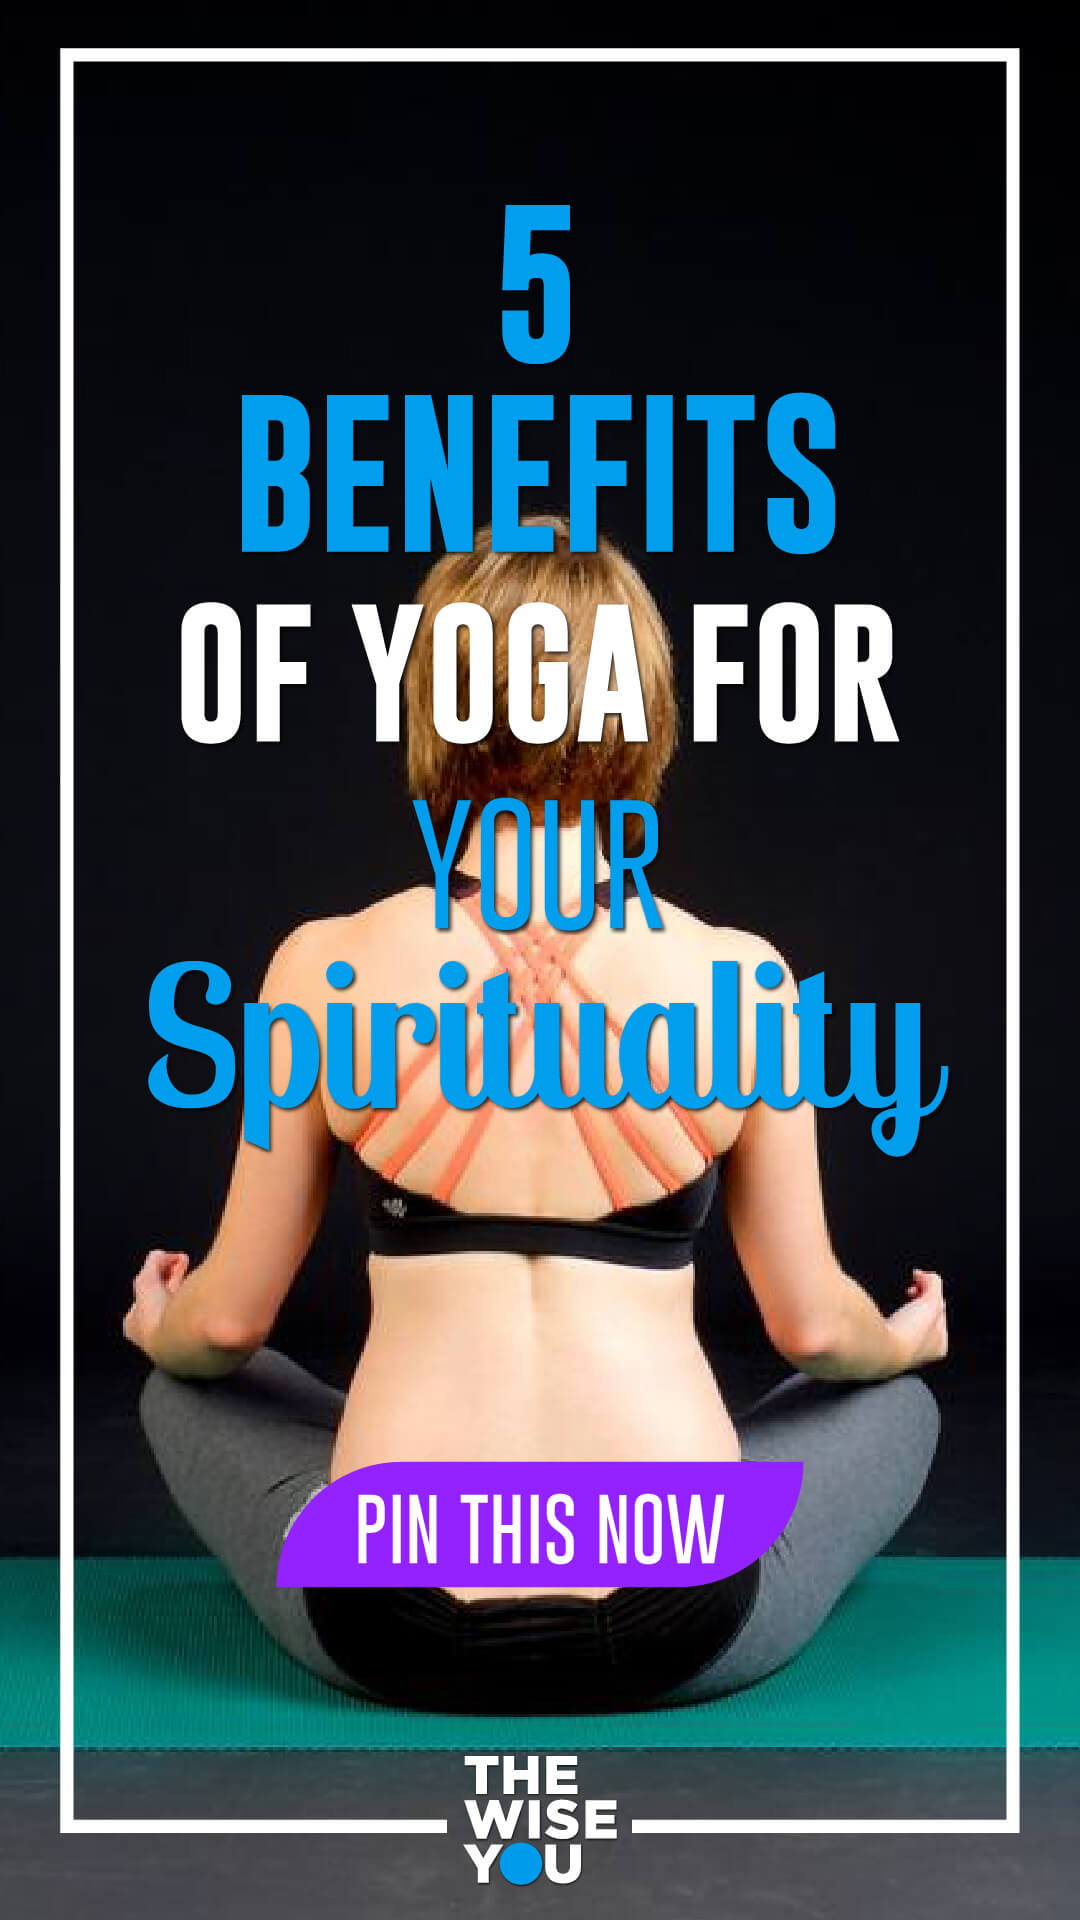 5 Benefits of Yoga for Your Spirituality